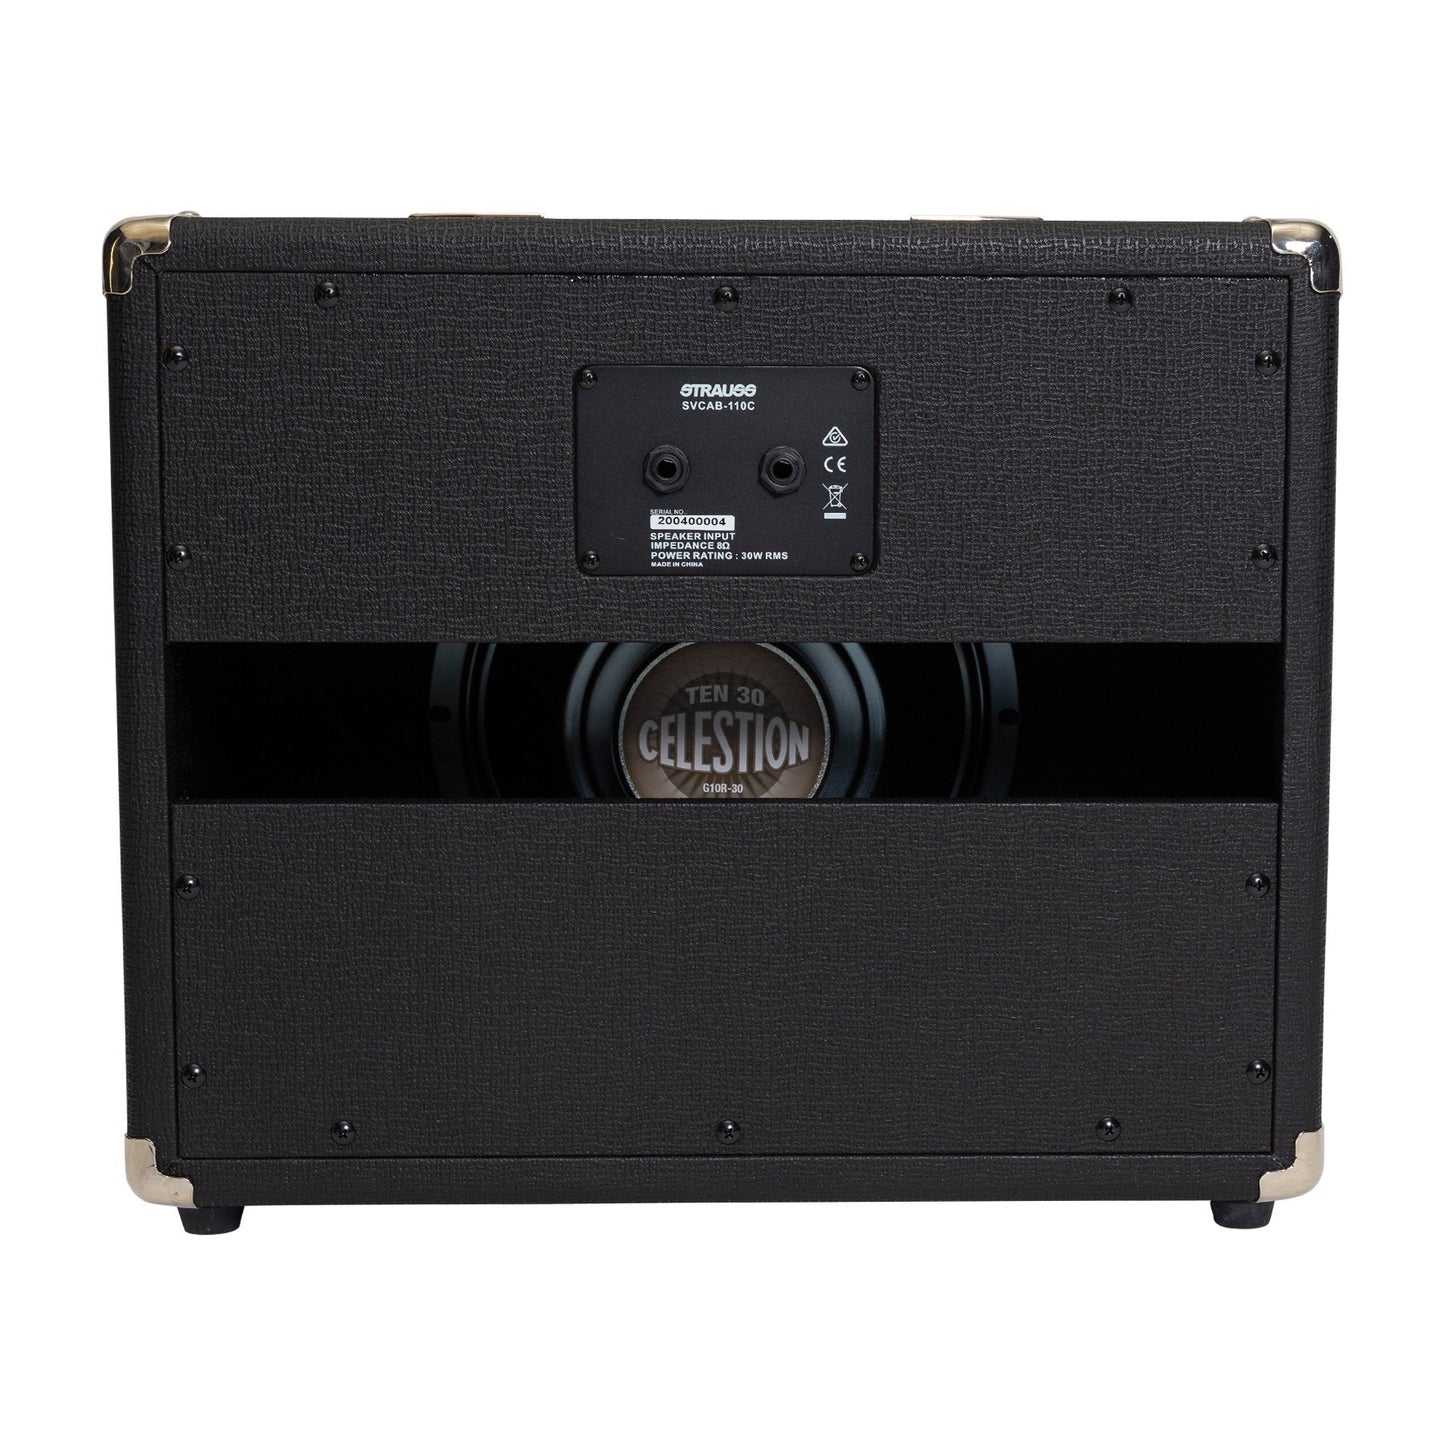 Load image into Gallery viewer, Strauss 1x10 30 Watt Open Back Speaker Cabinet (Black)
